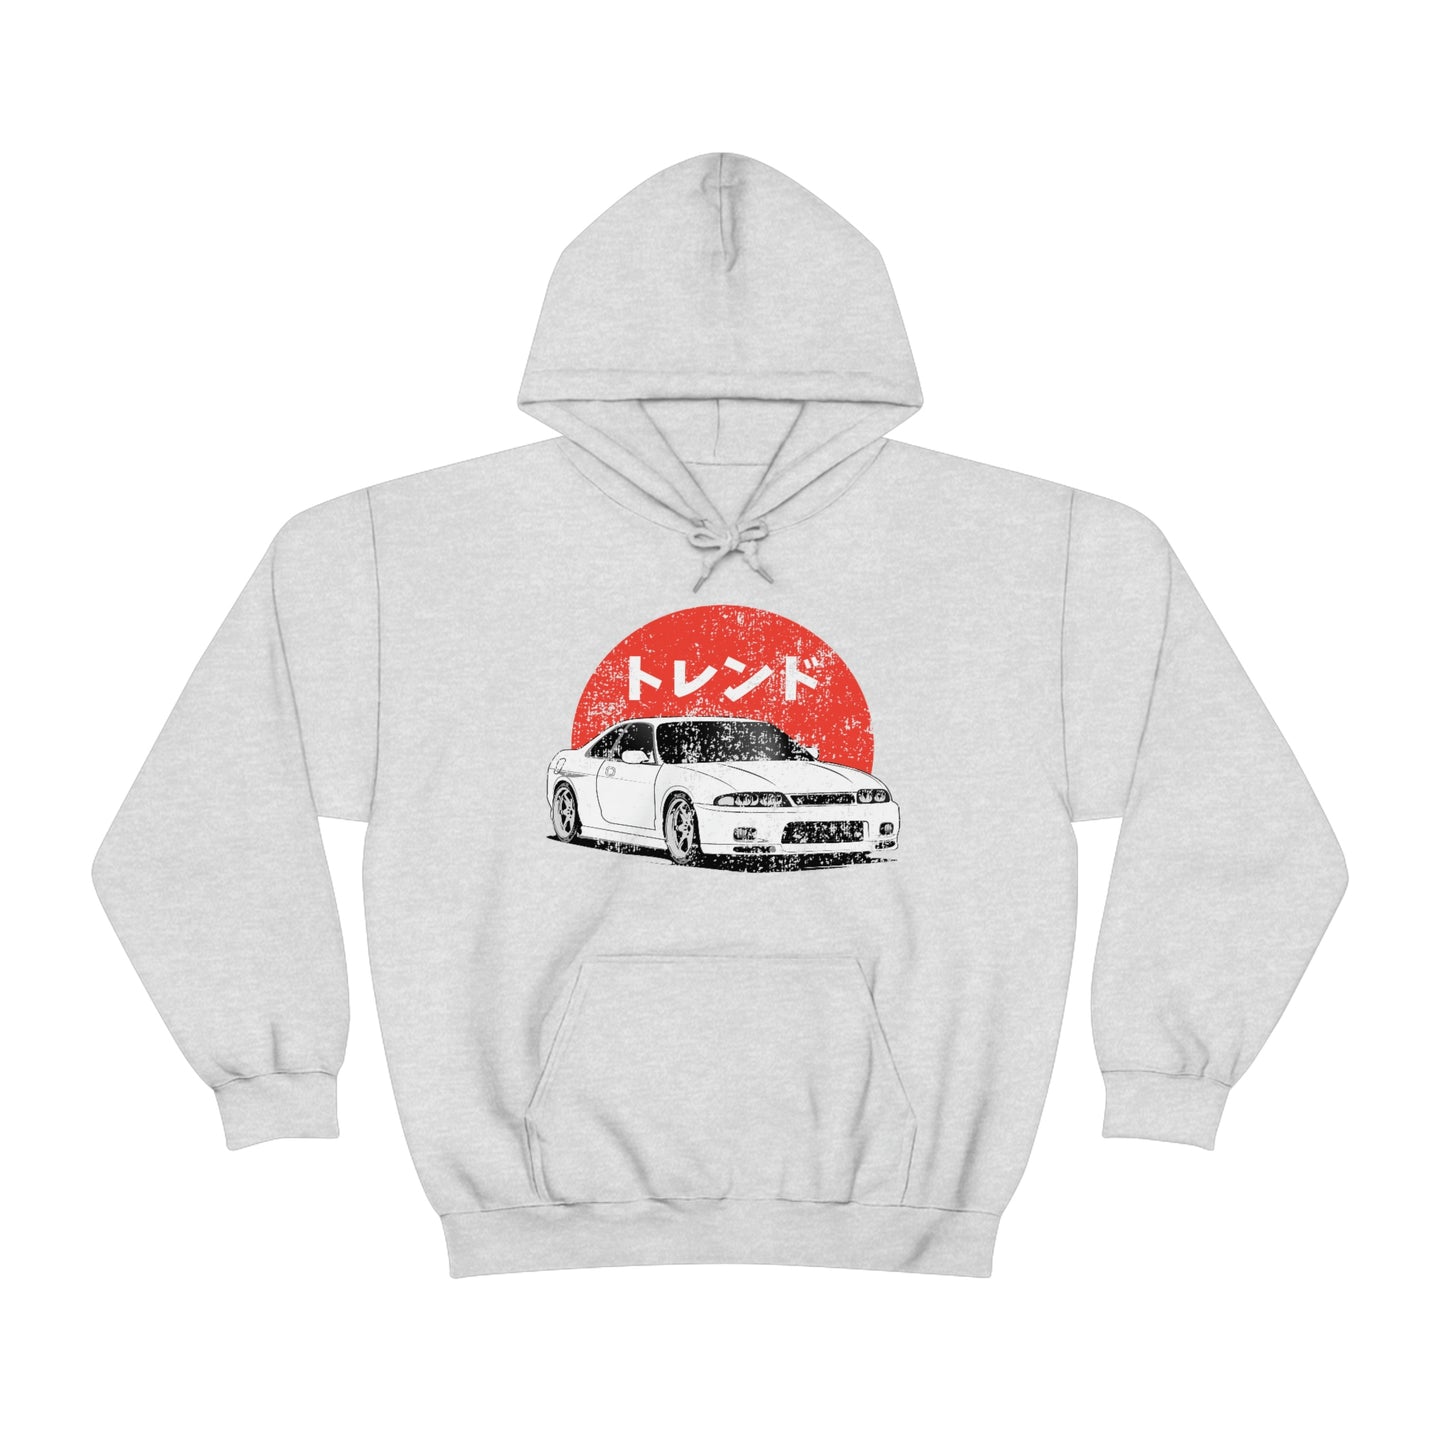 Japanese JDM Car Hoodie Anime Initial Hoodies Mazda RX7 Streetwear Pullover